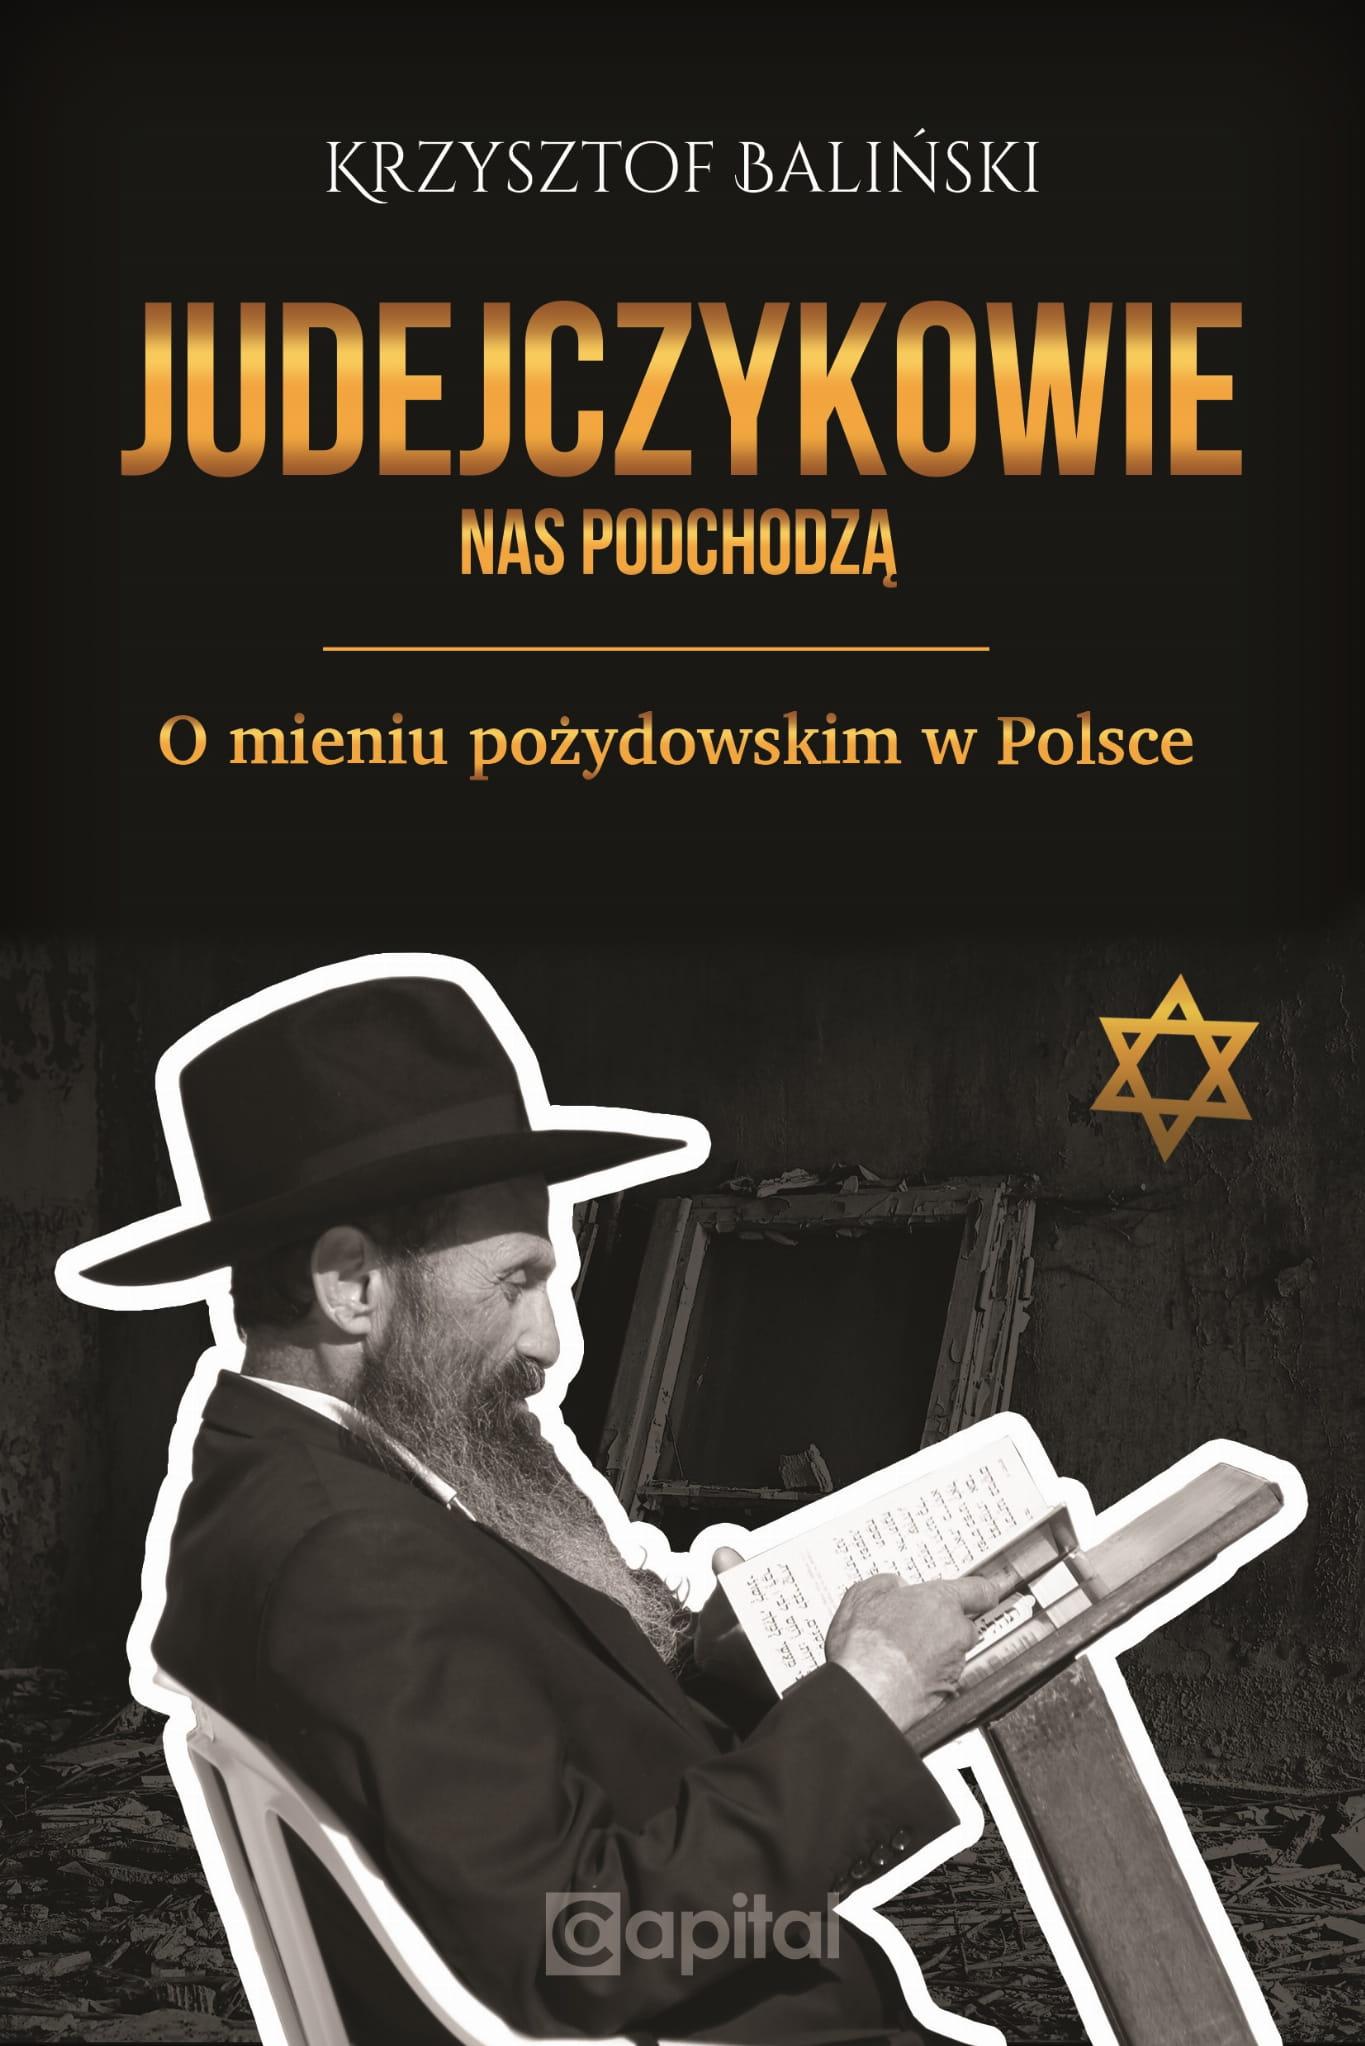 Judejczykowie nas podchodzą O mieniu pożydowskim w Polsce (K.Baliński)